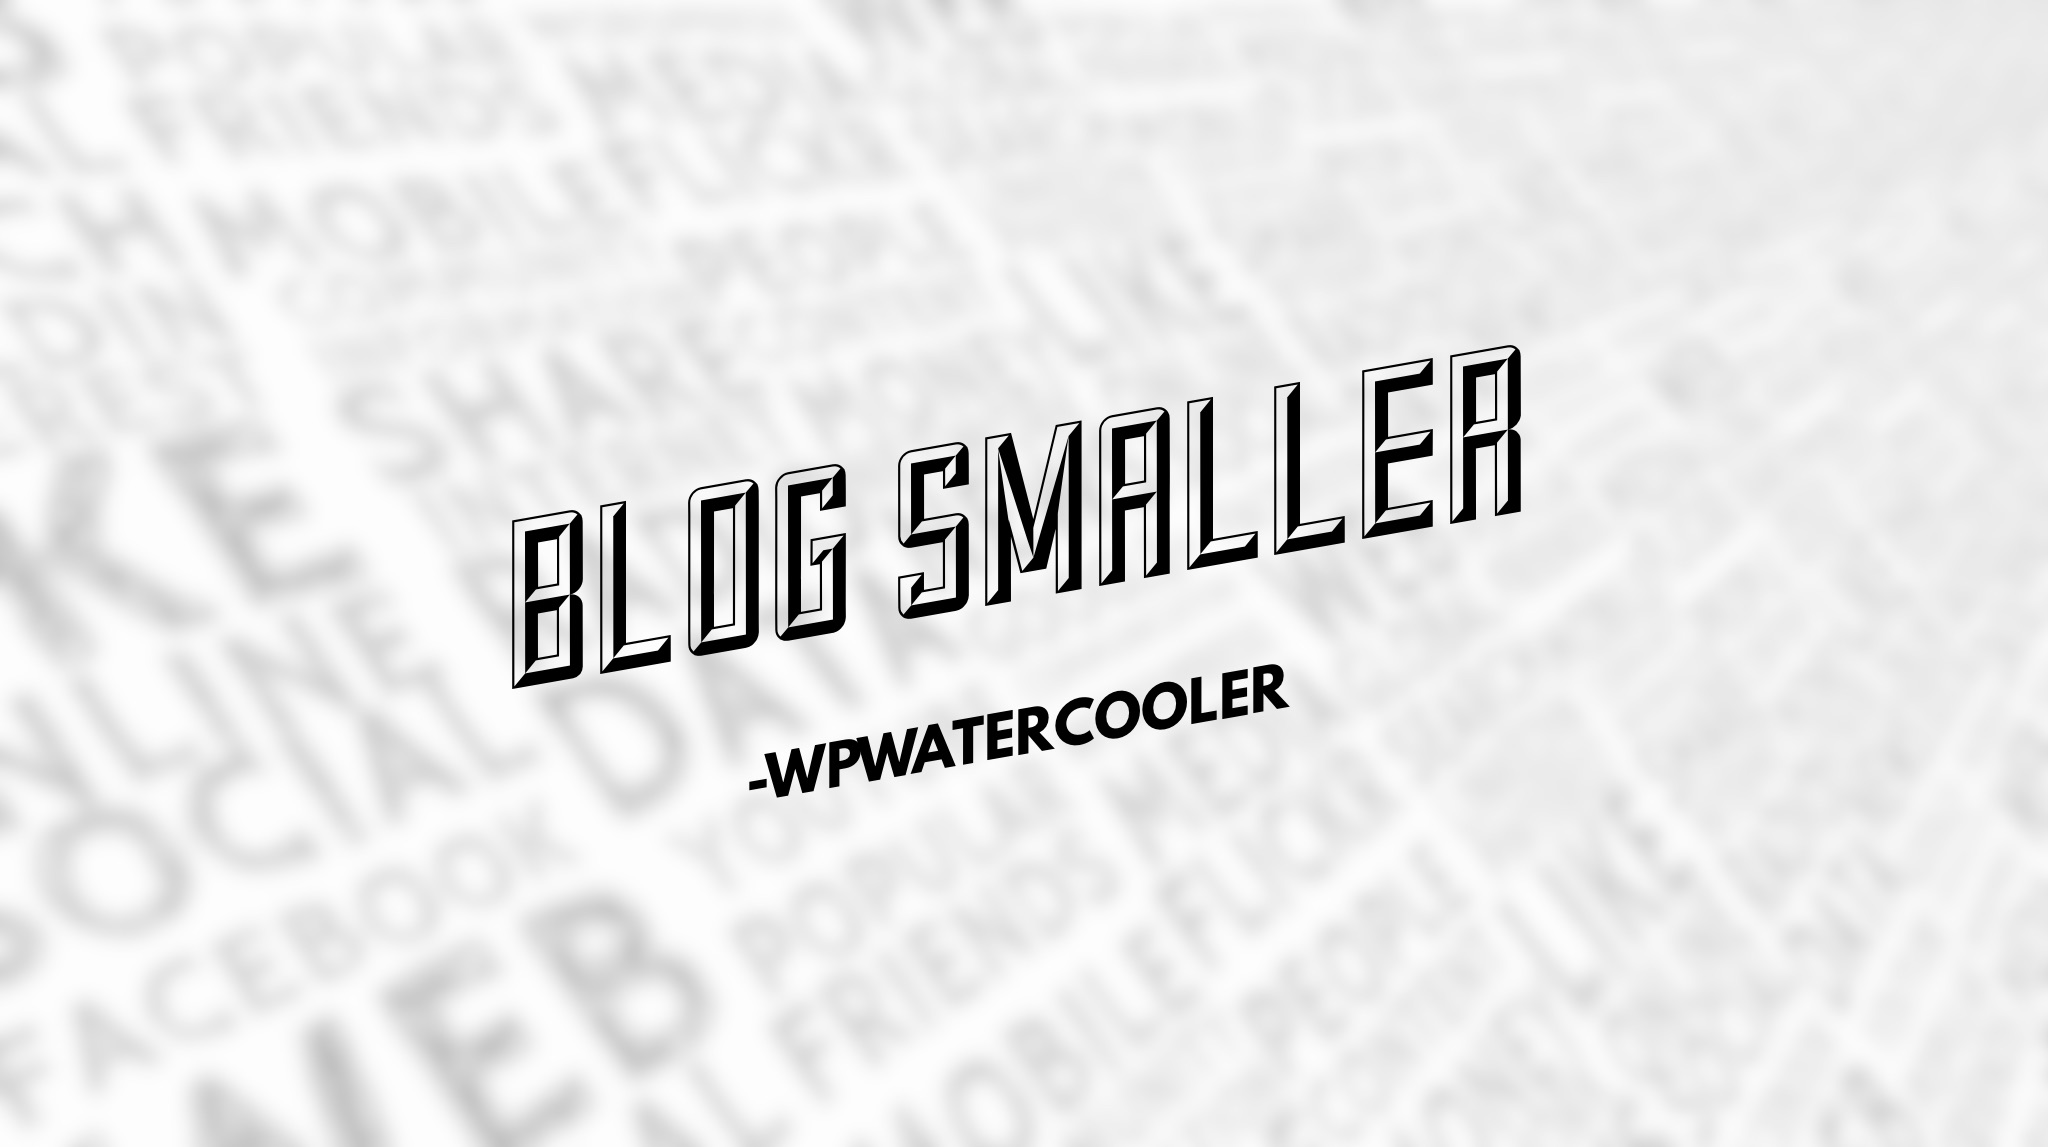 EP271 – Blog Smaller – WPwatercooler